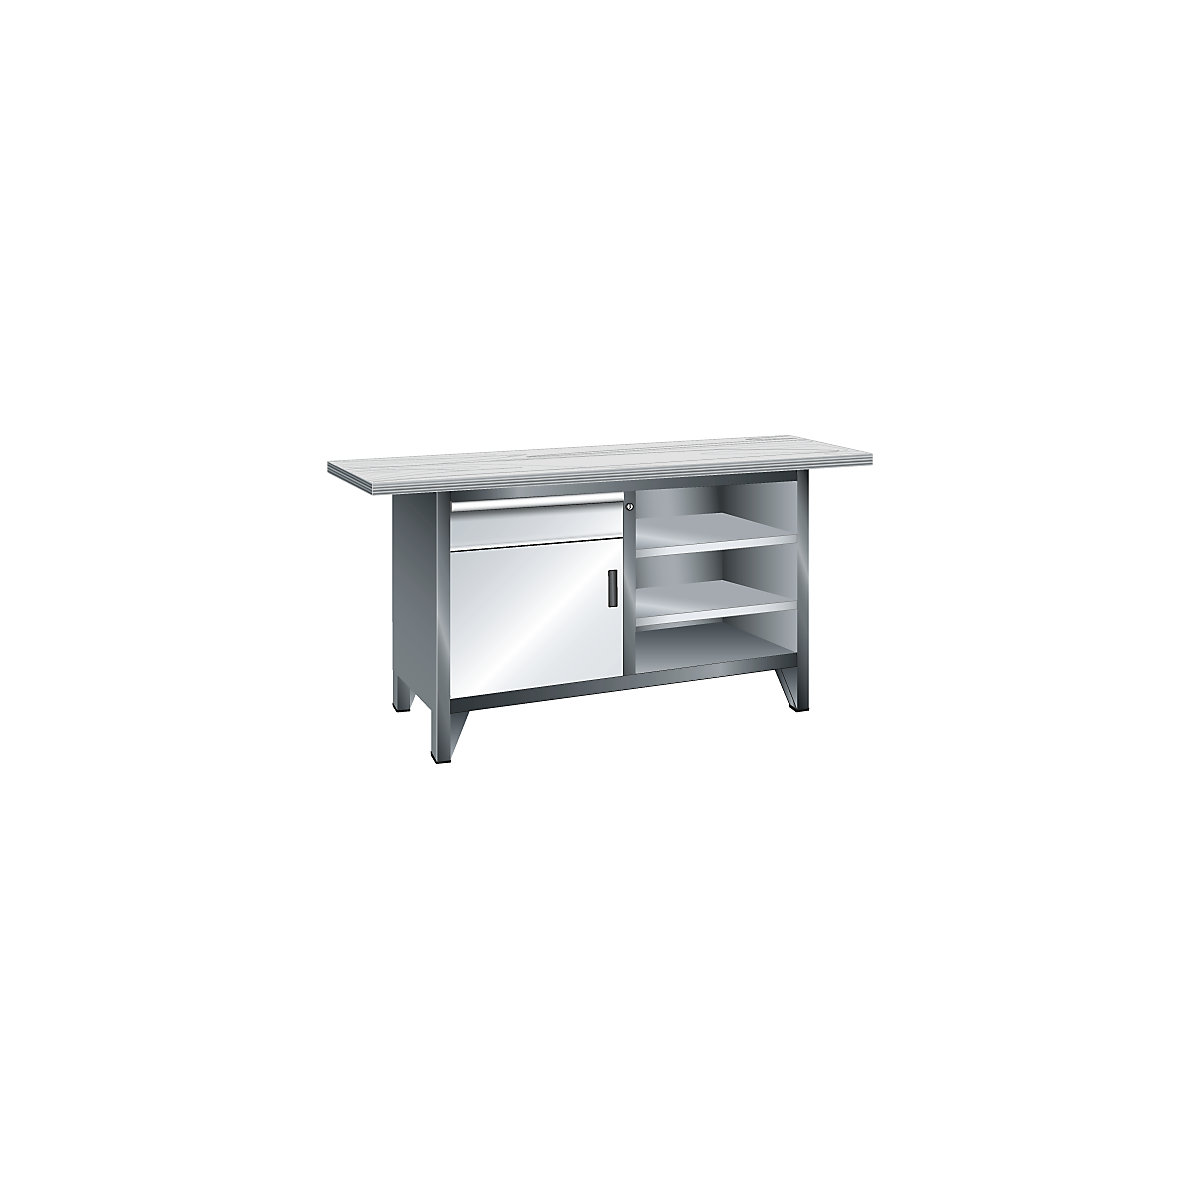 Workbench width 1500 mm, frame construction – LISTA, 3 shelves, 1 drawer, 1 door, body light grey, front light blue-7